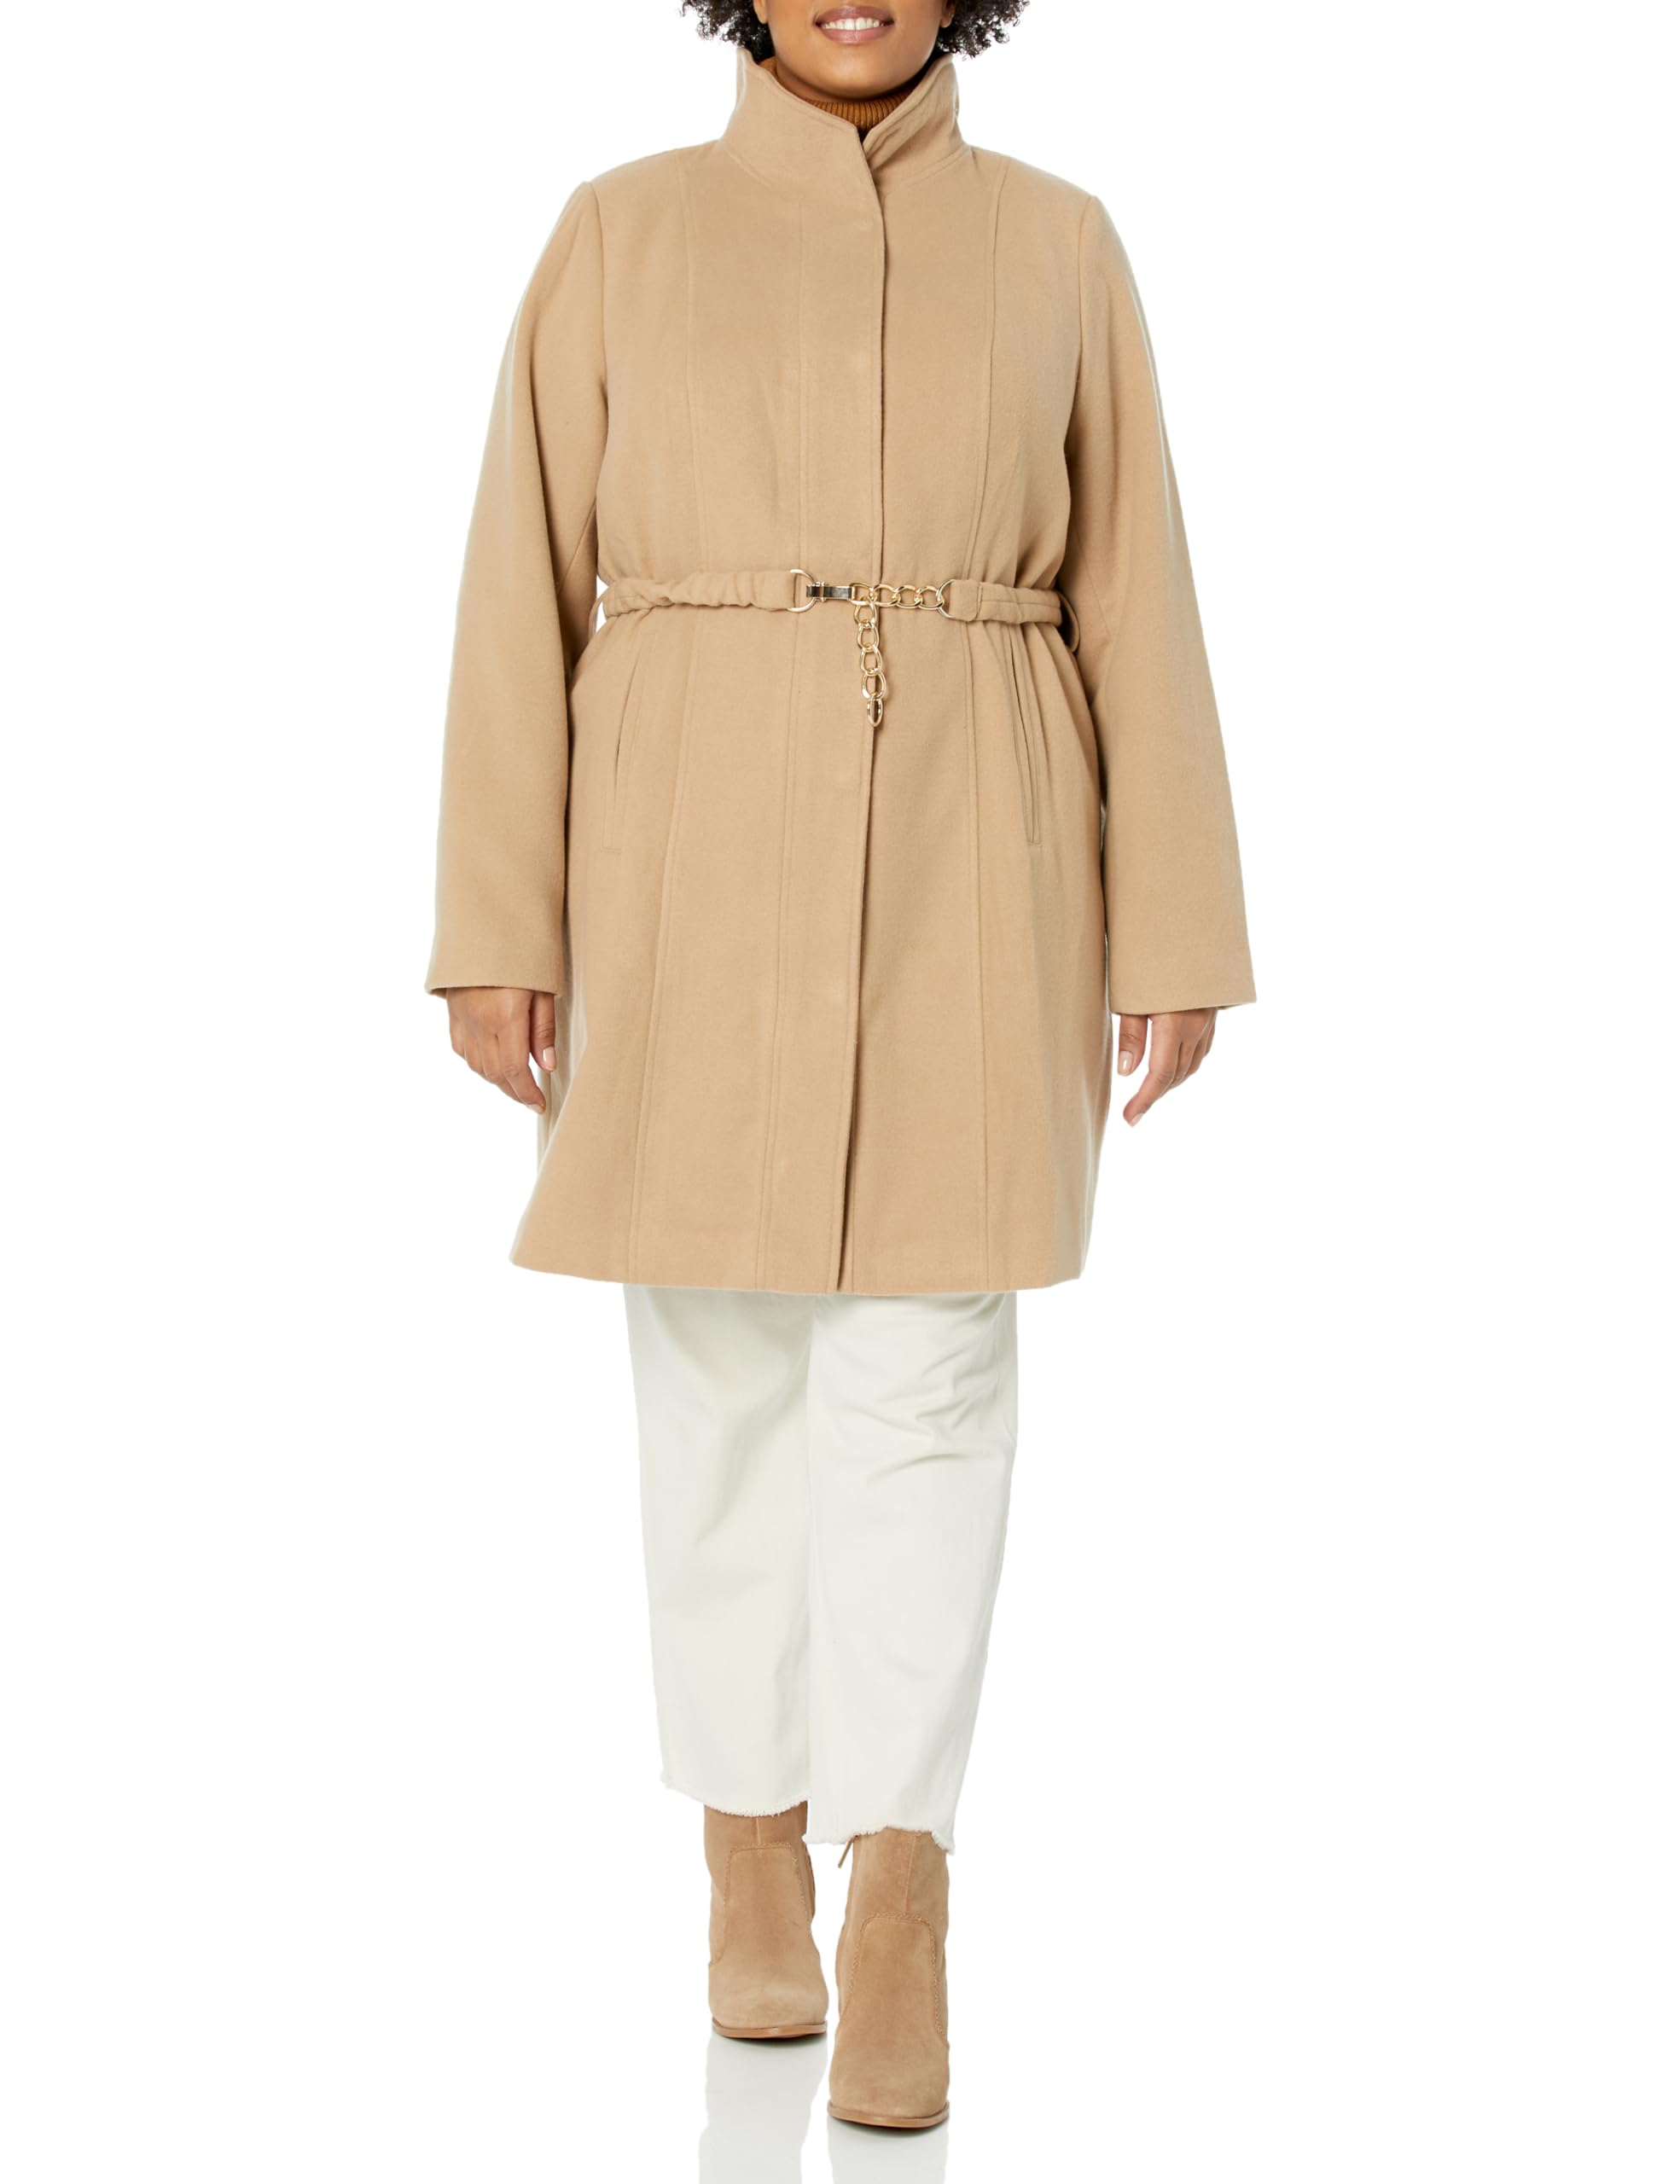 Arna York Women's Arnayork Plus Size Jacket Shiloh